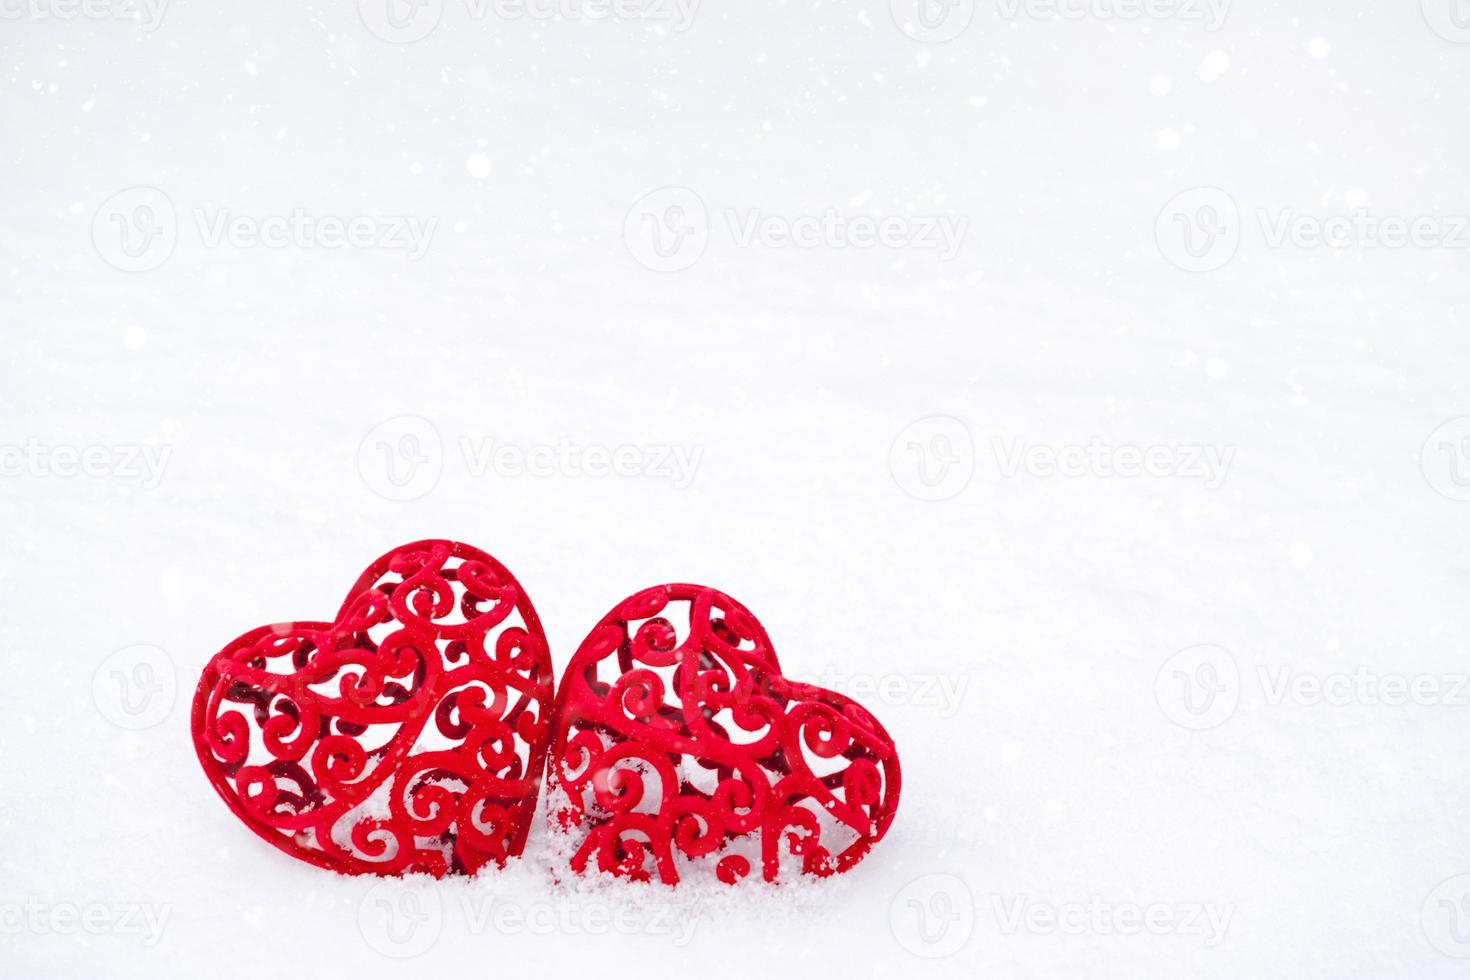 dos corazones rojos en la nieve: una tarjeta de felicitación para el día de san valentín, la festividad de todos los amantes el 14 de febrero. copie el espacio. invitación a una cita, amor, citas foto